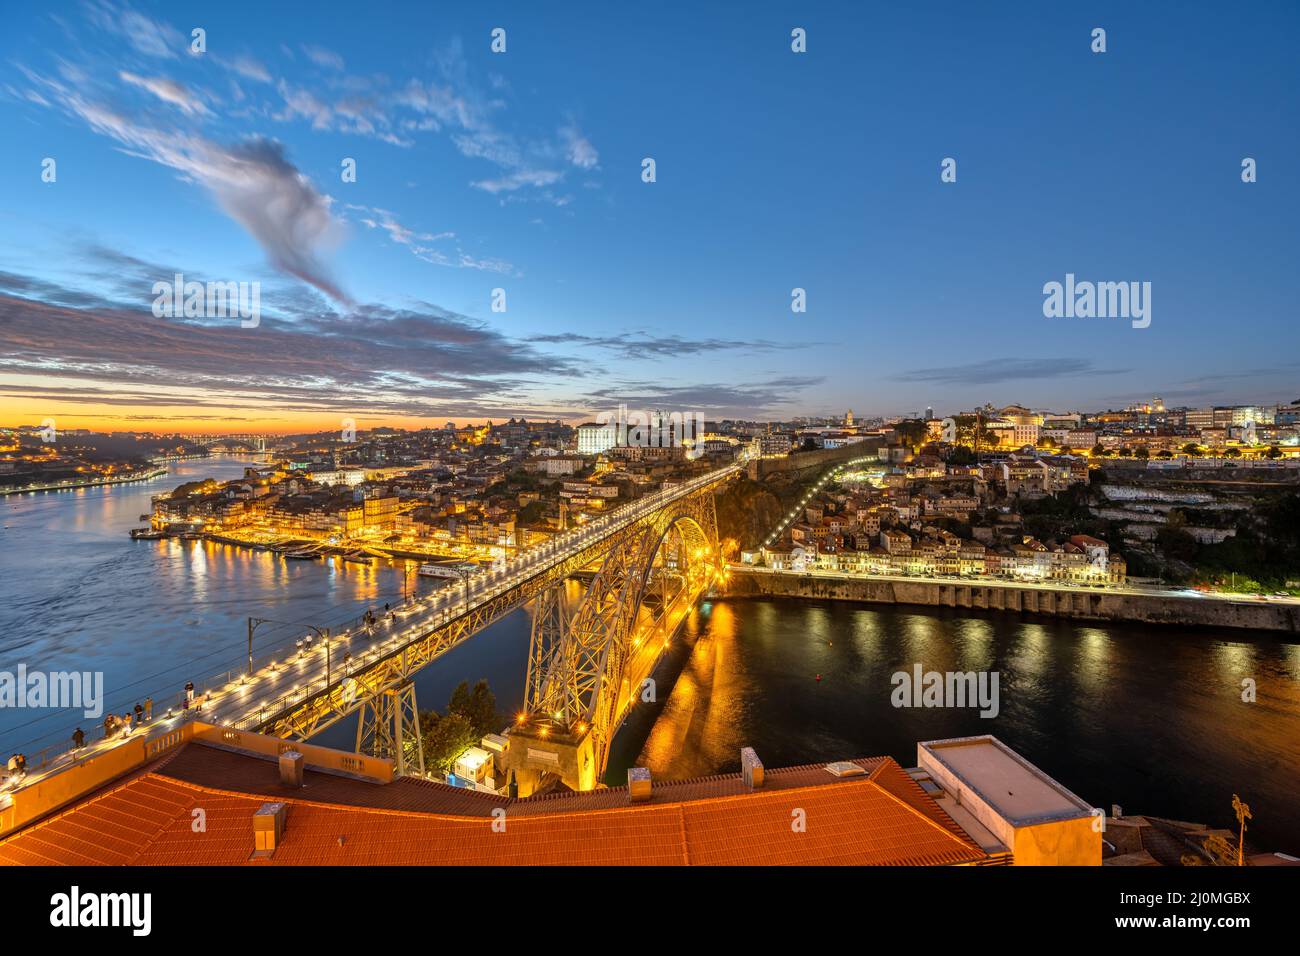 Vista de Oporto con el puente Dom Luis I y el río Duero después de la puesta de sol Foto de stock